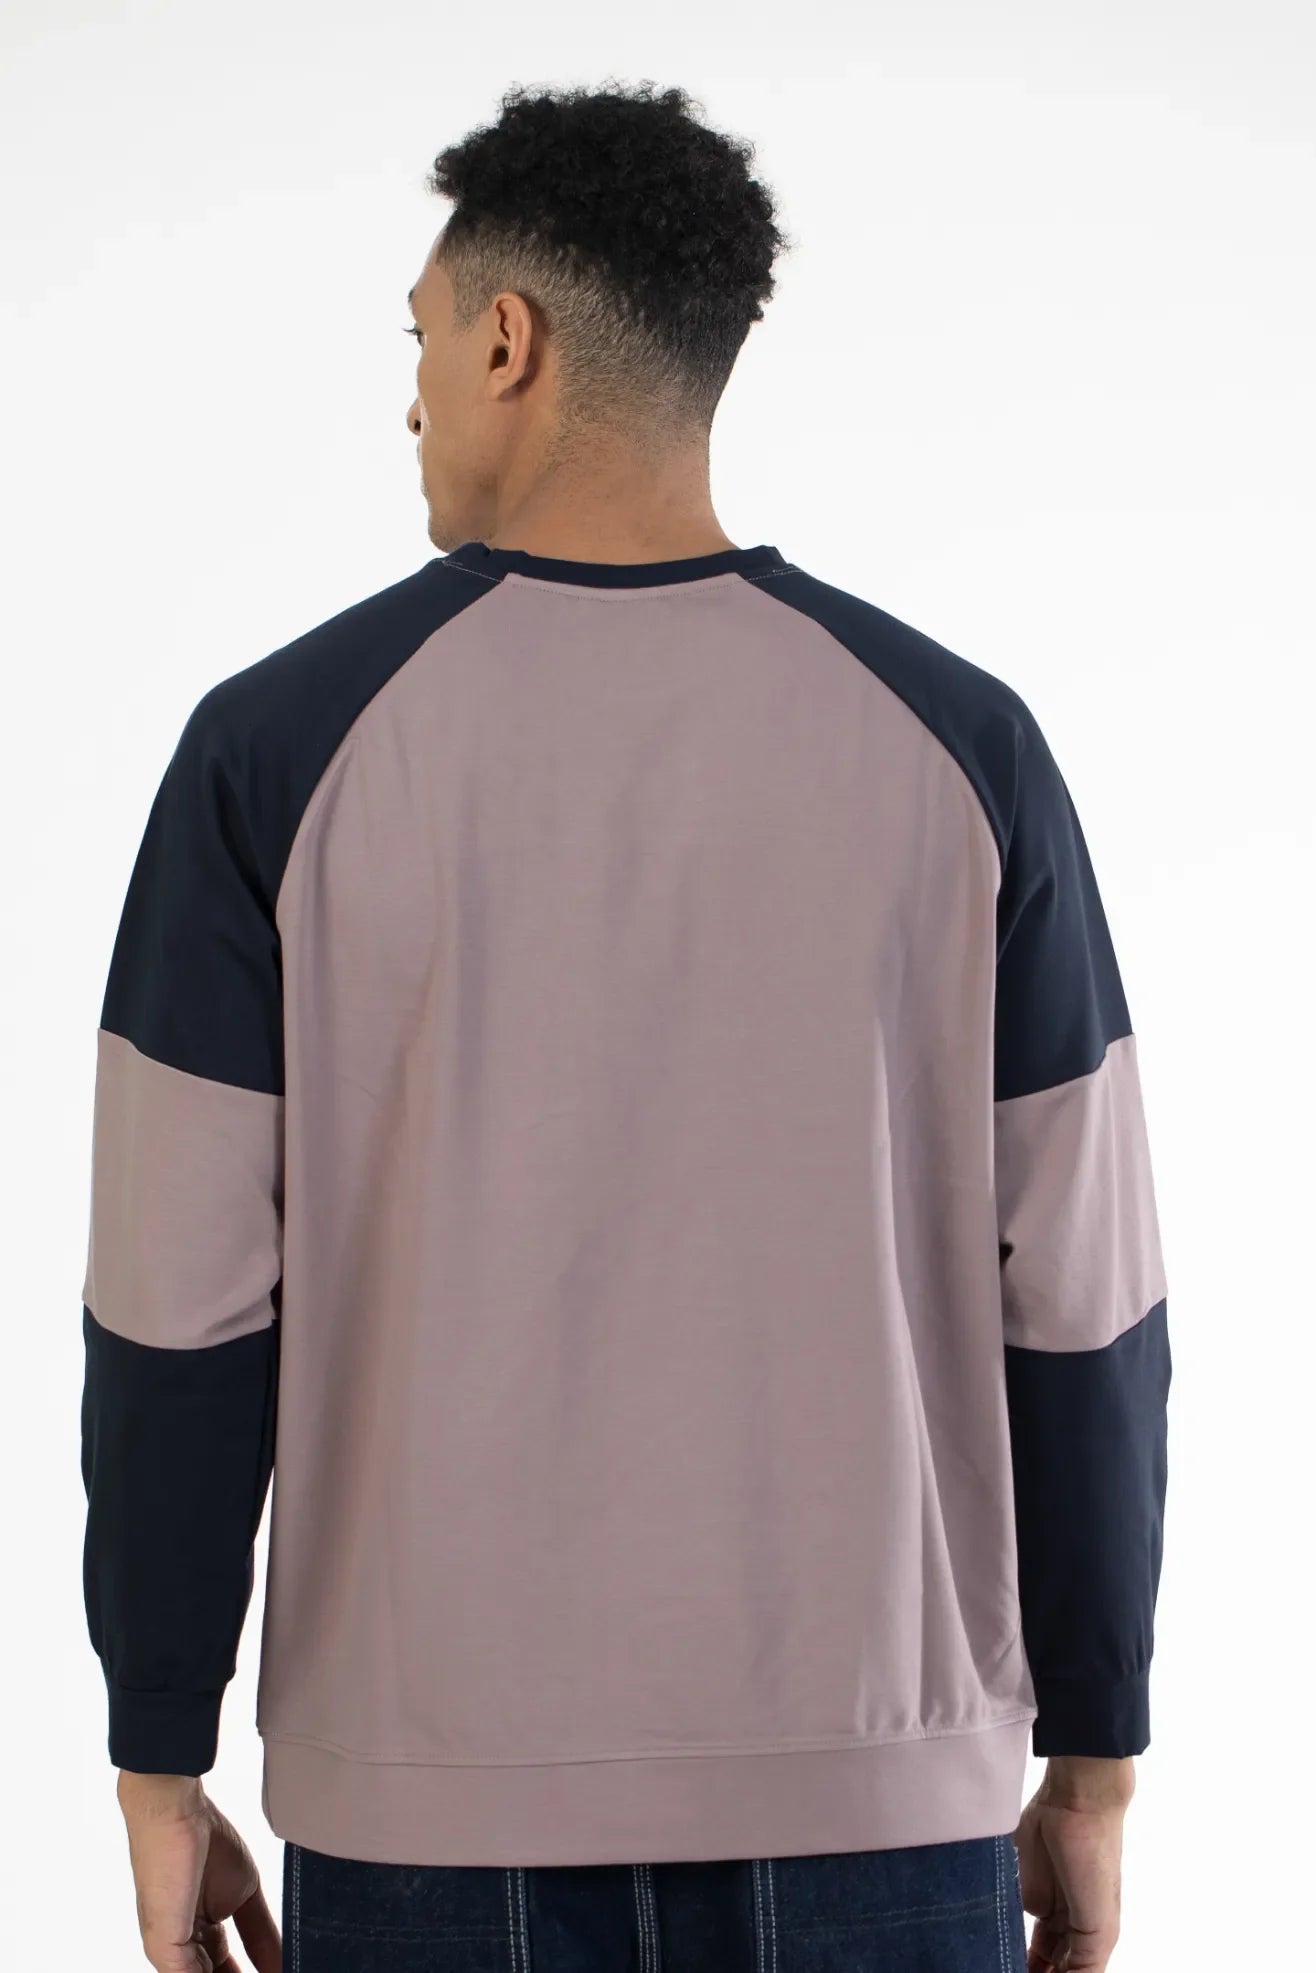 Buy Raglan Sleeve Graphic Printed Sweatshirt Online.